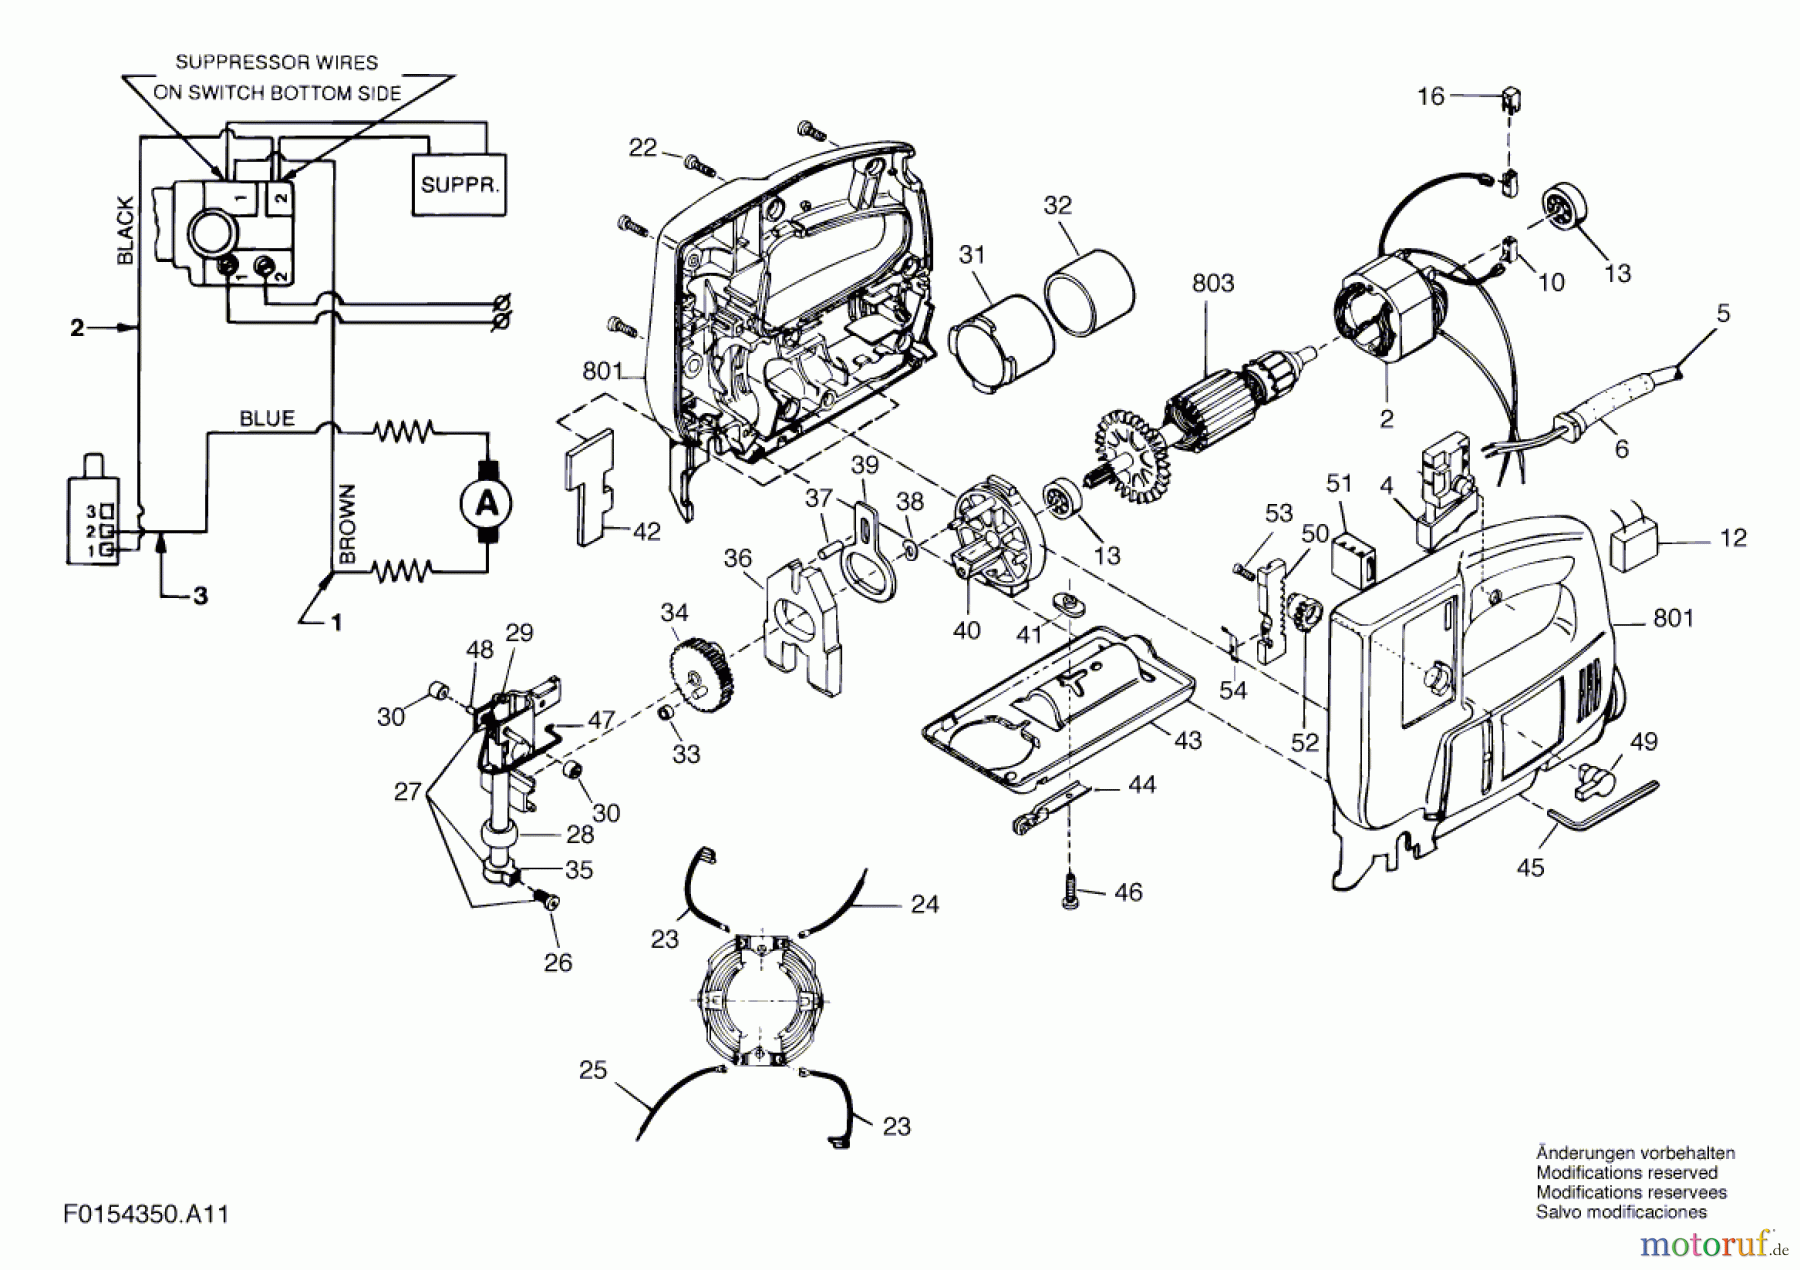  Bosch Werkzeug Stichsäge 4350 H1 Seite 1